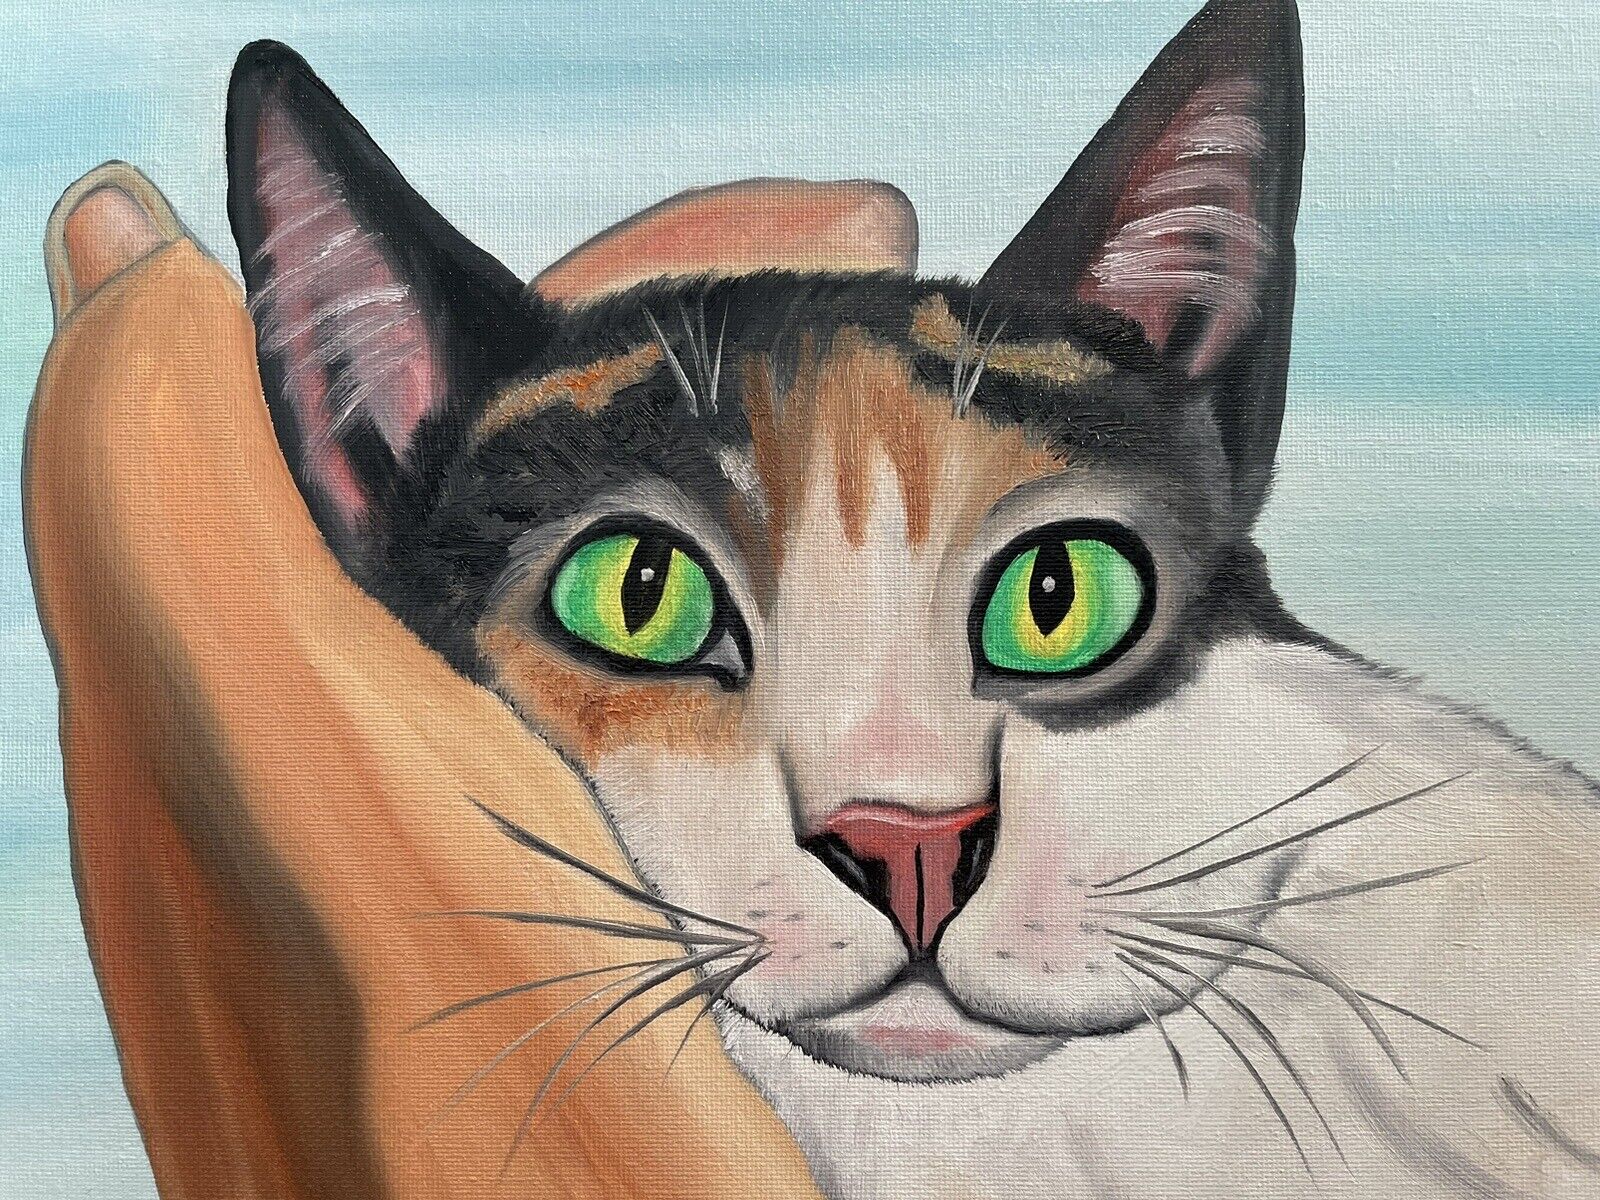 Original oil painting signed 11 x 14 Cute Calico Cat Без бренда - фотография #2